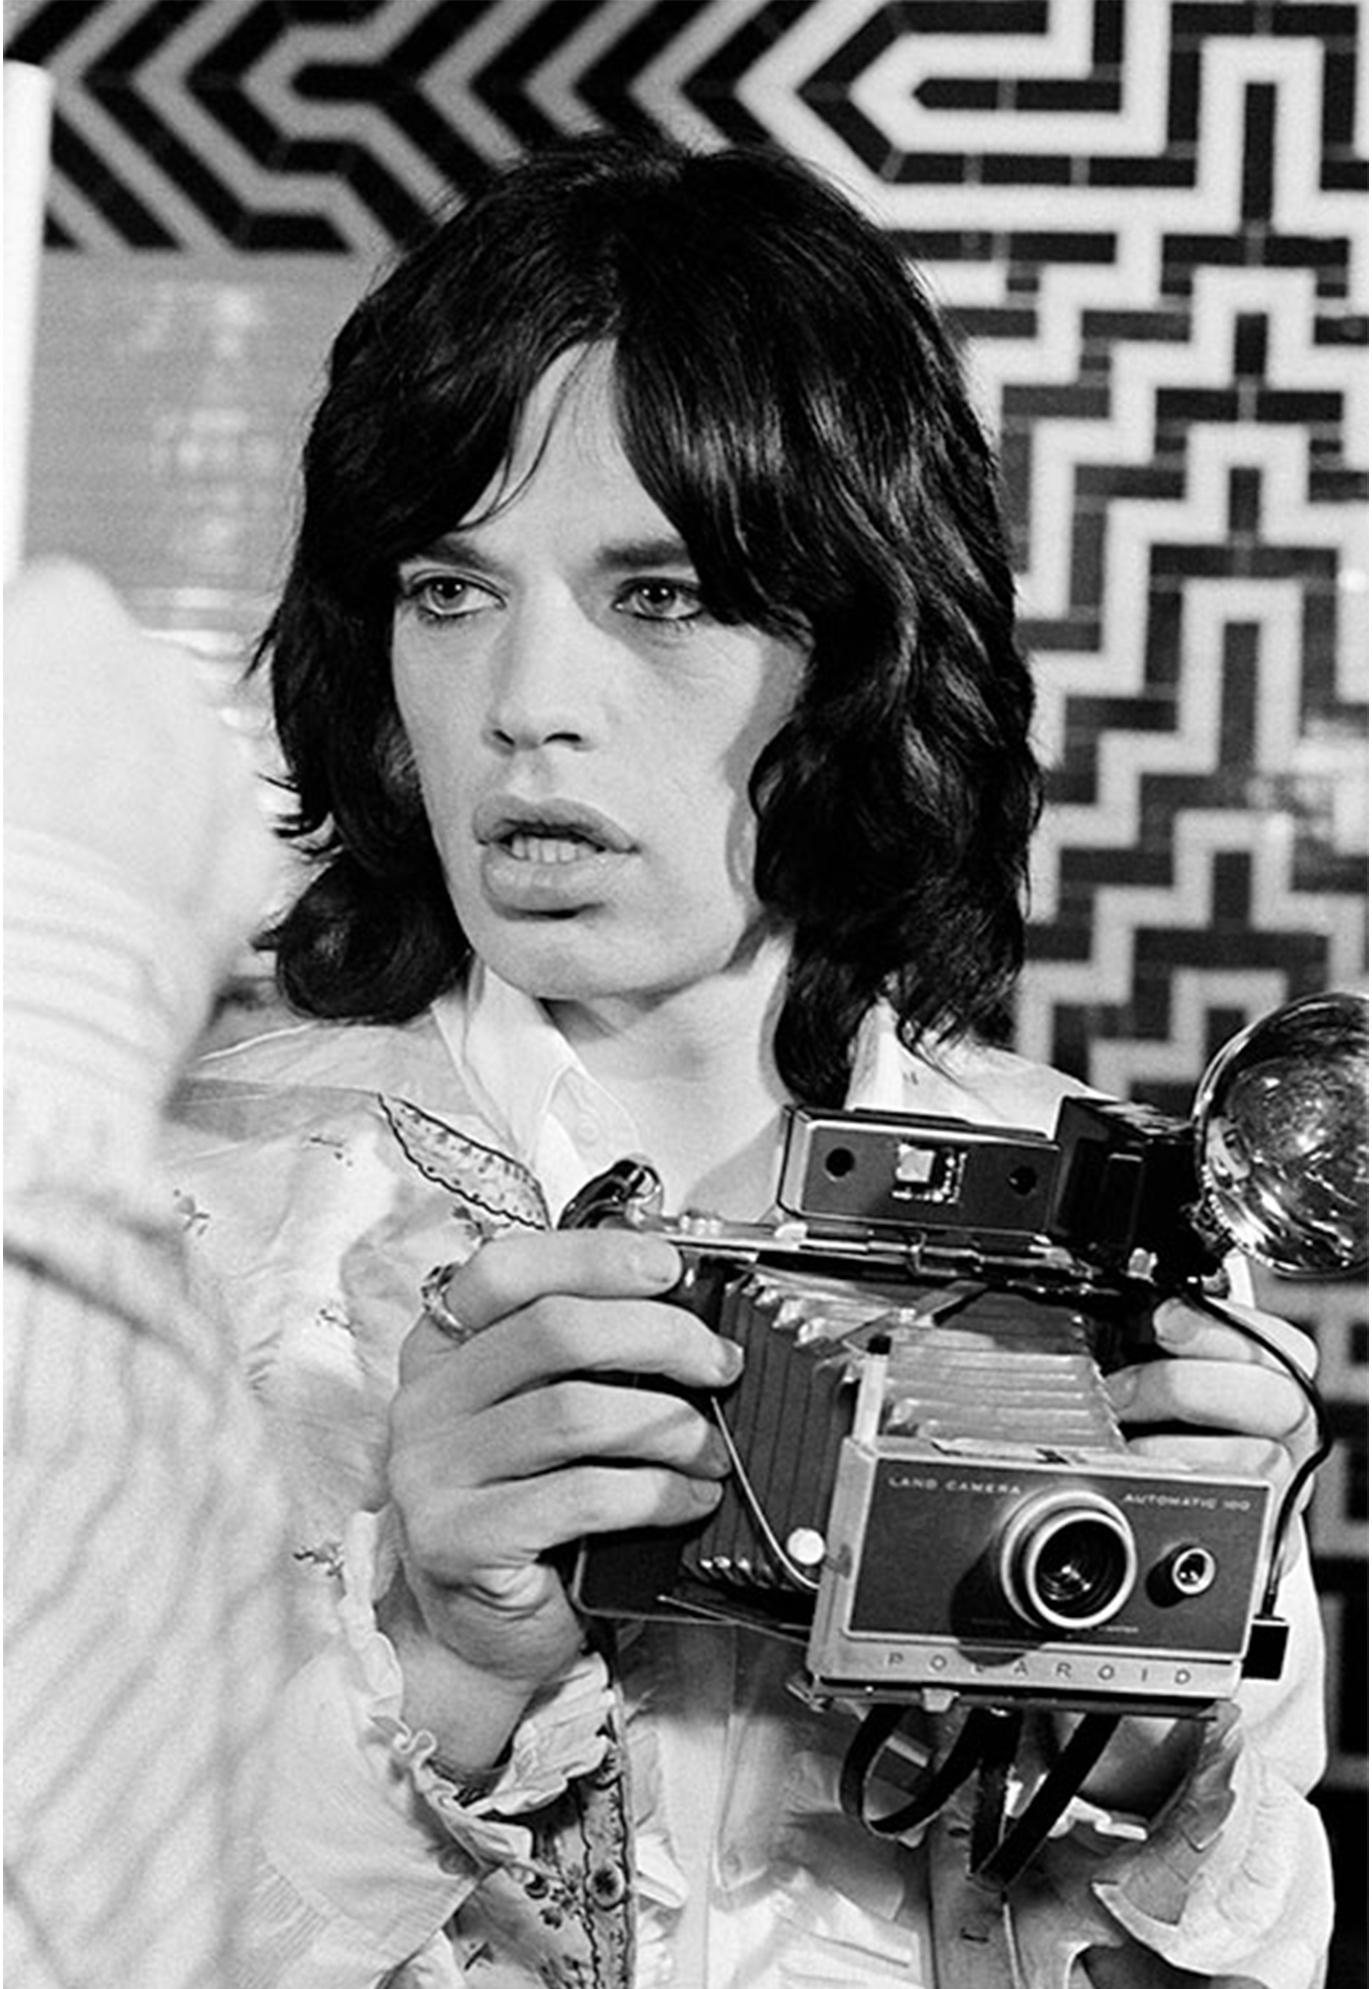 Mick Jagger mit Kamera von Baron Wolman signiert 11x14"" Druck in limitierter Auflage